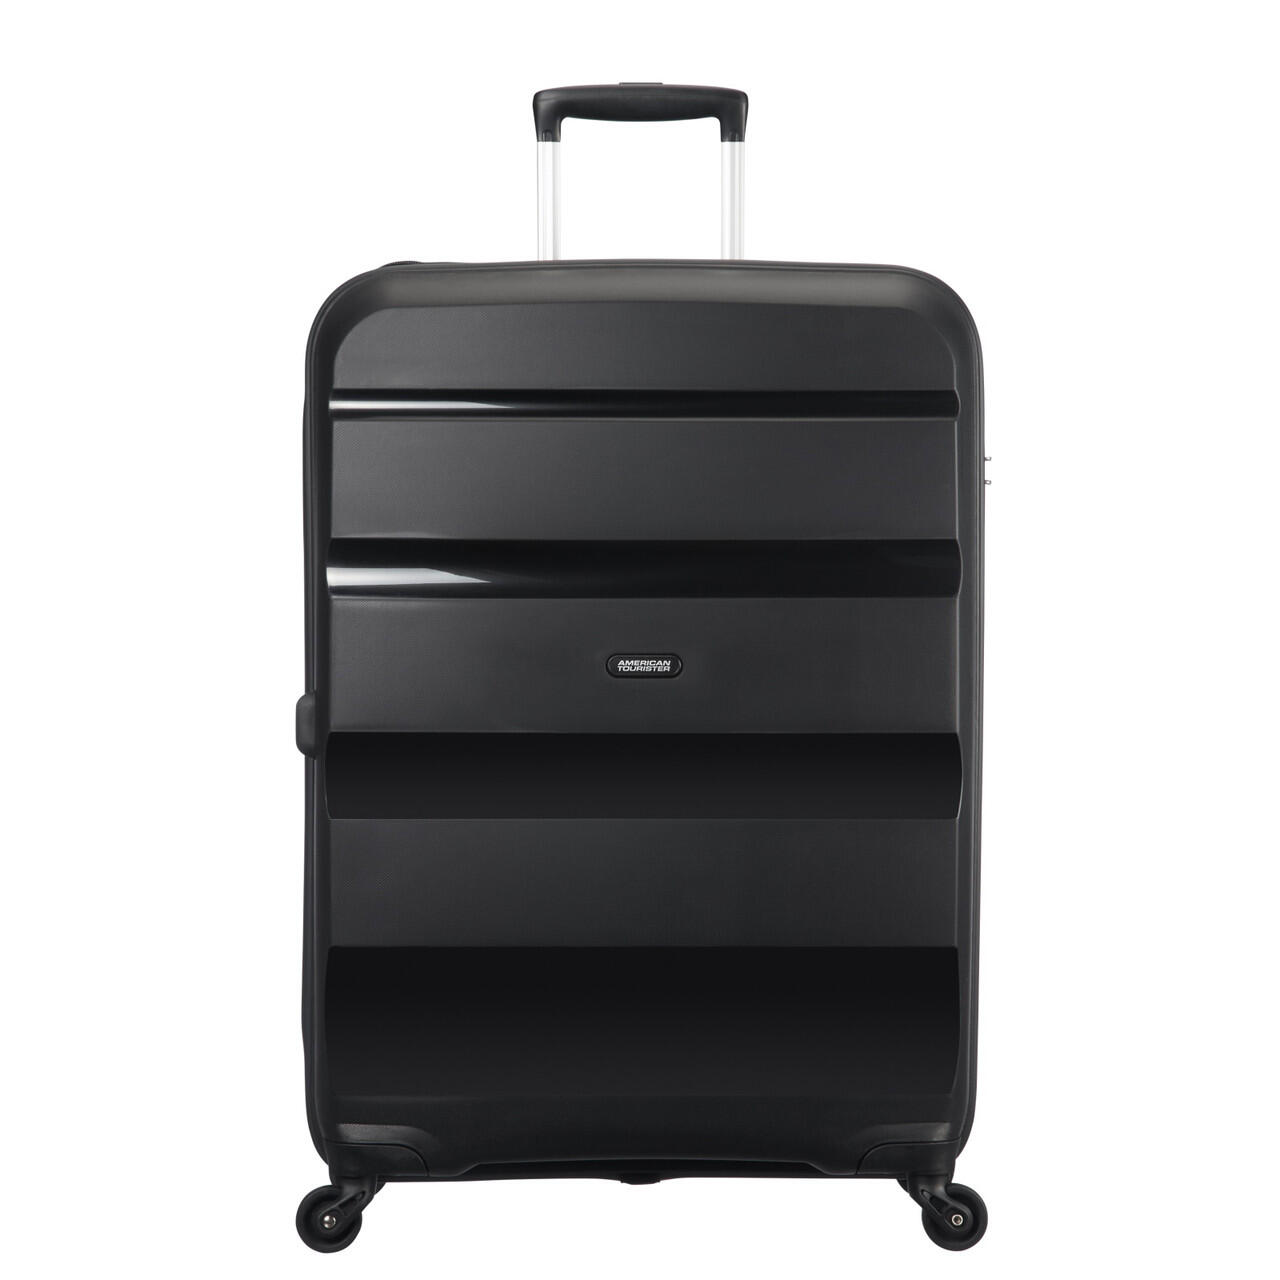 Bon Air 4 Wheel Large Suitcase - 75cm - Black 1/7